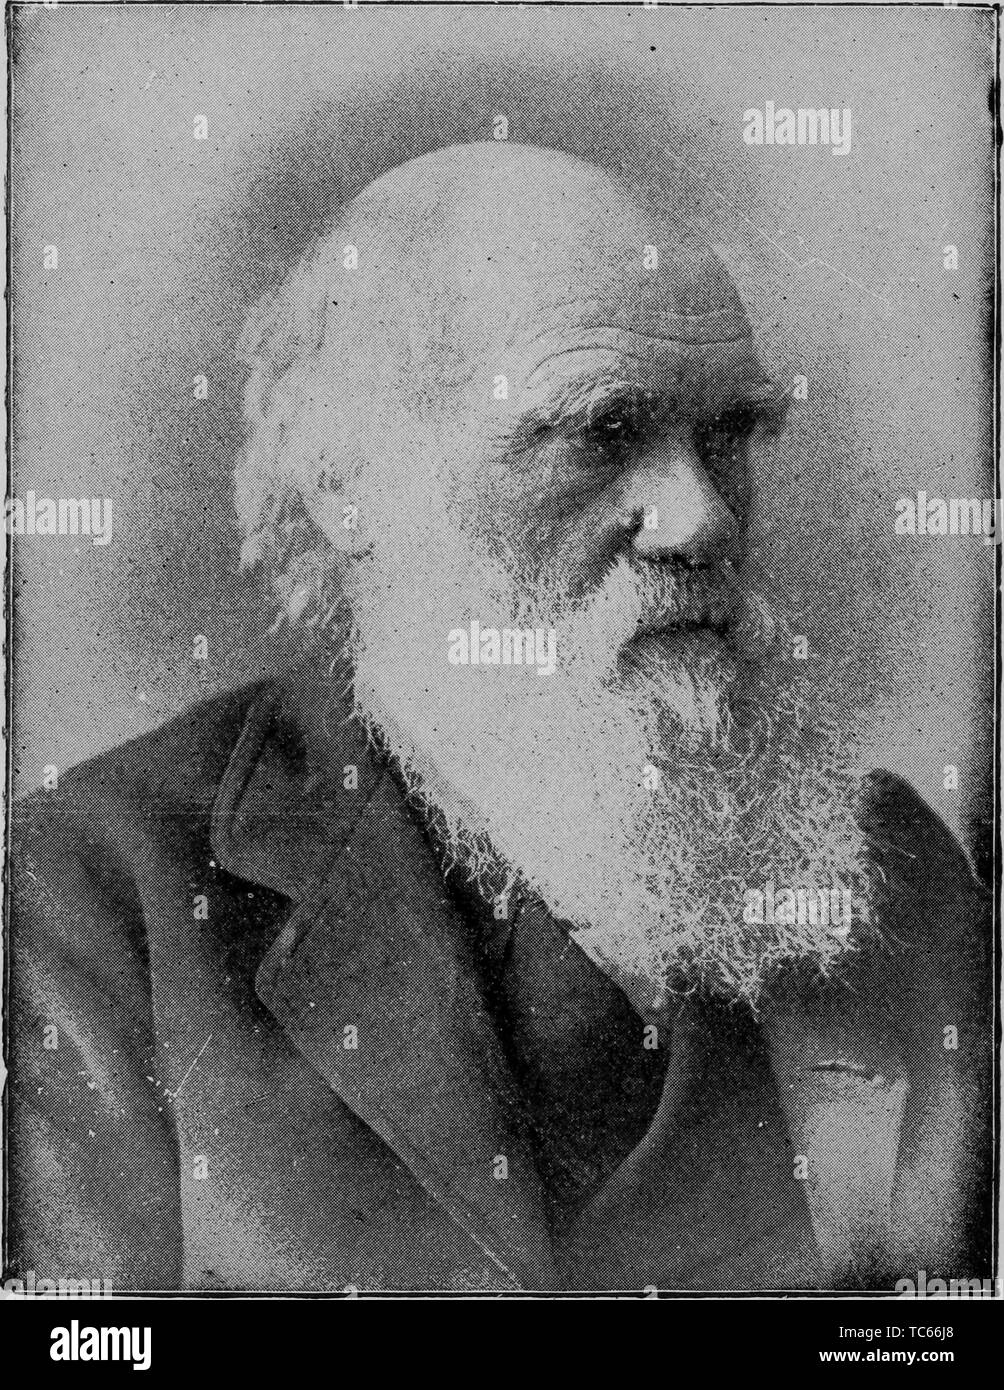 Incisi ritratto di Charles Darwin, un naturalista inglese e biologo, più noto per la sua teoria evolutiva, dal libro "La discesa dell'uomo' di Charles Darwin, 1874. () Foto Stock